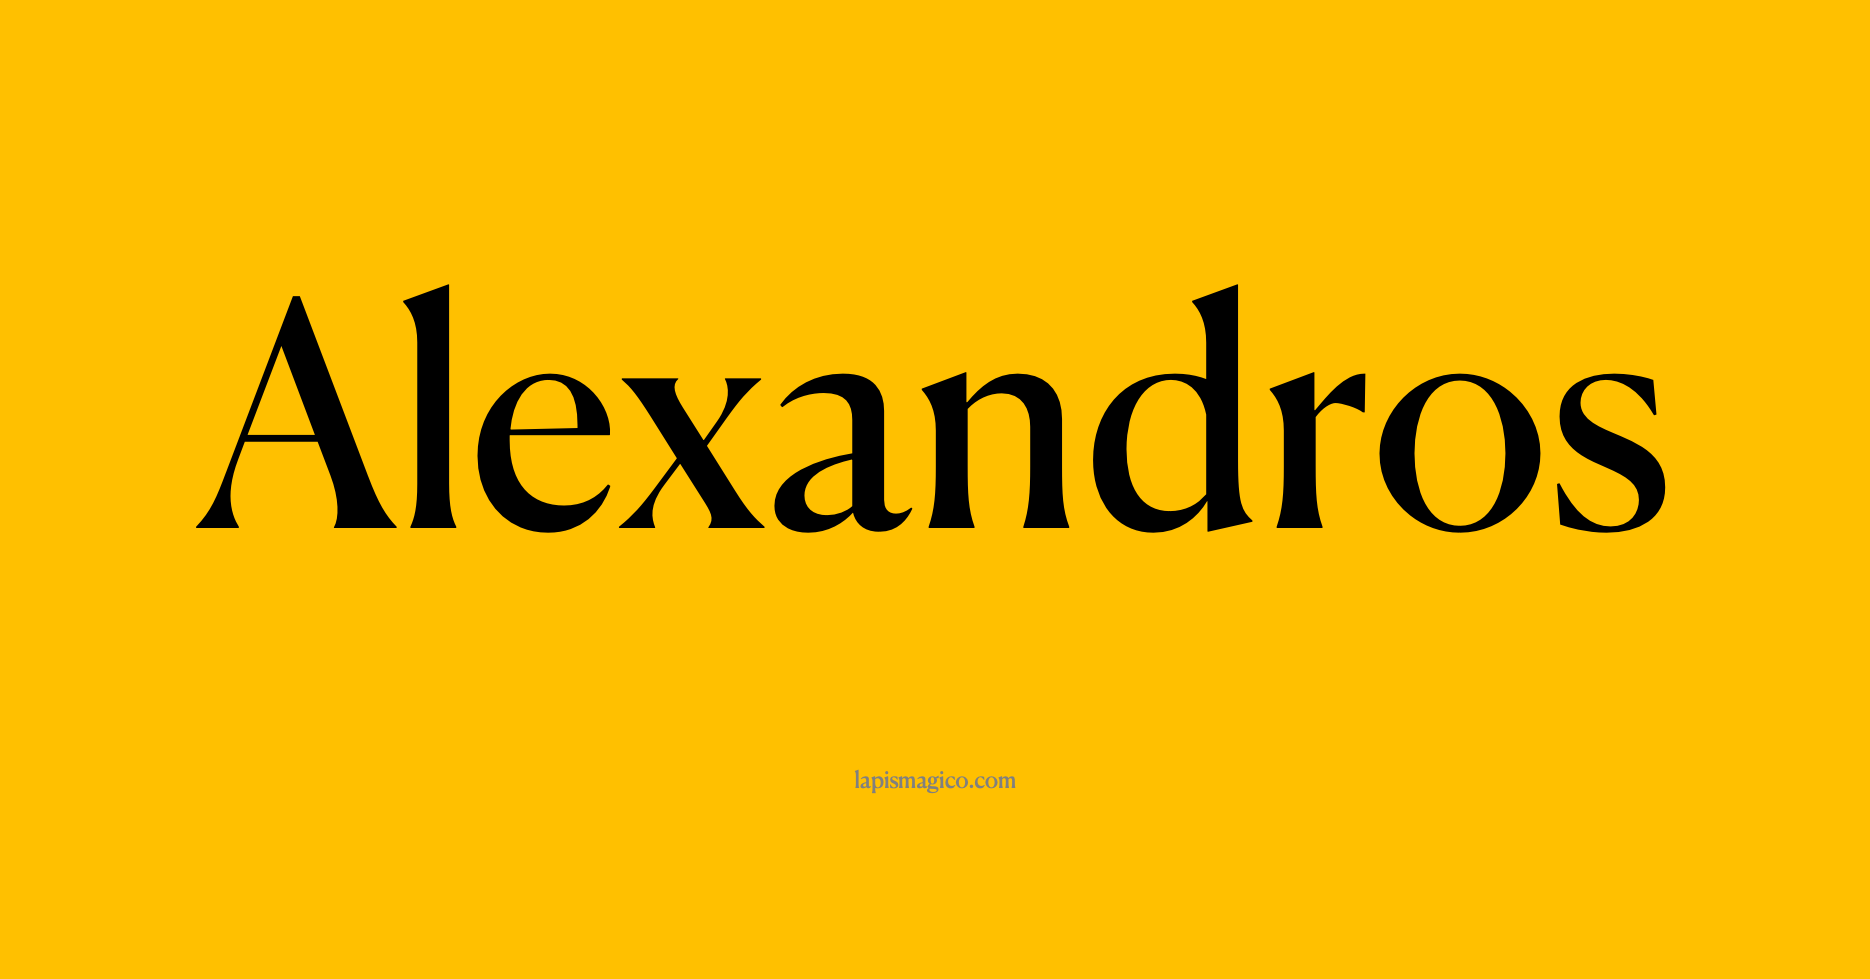 Nome Alexandros